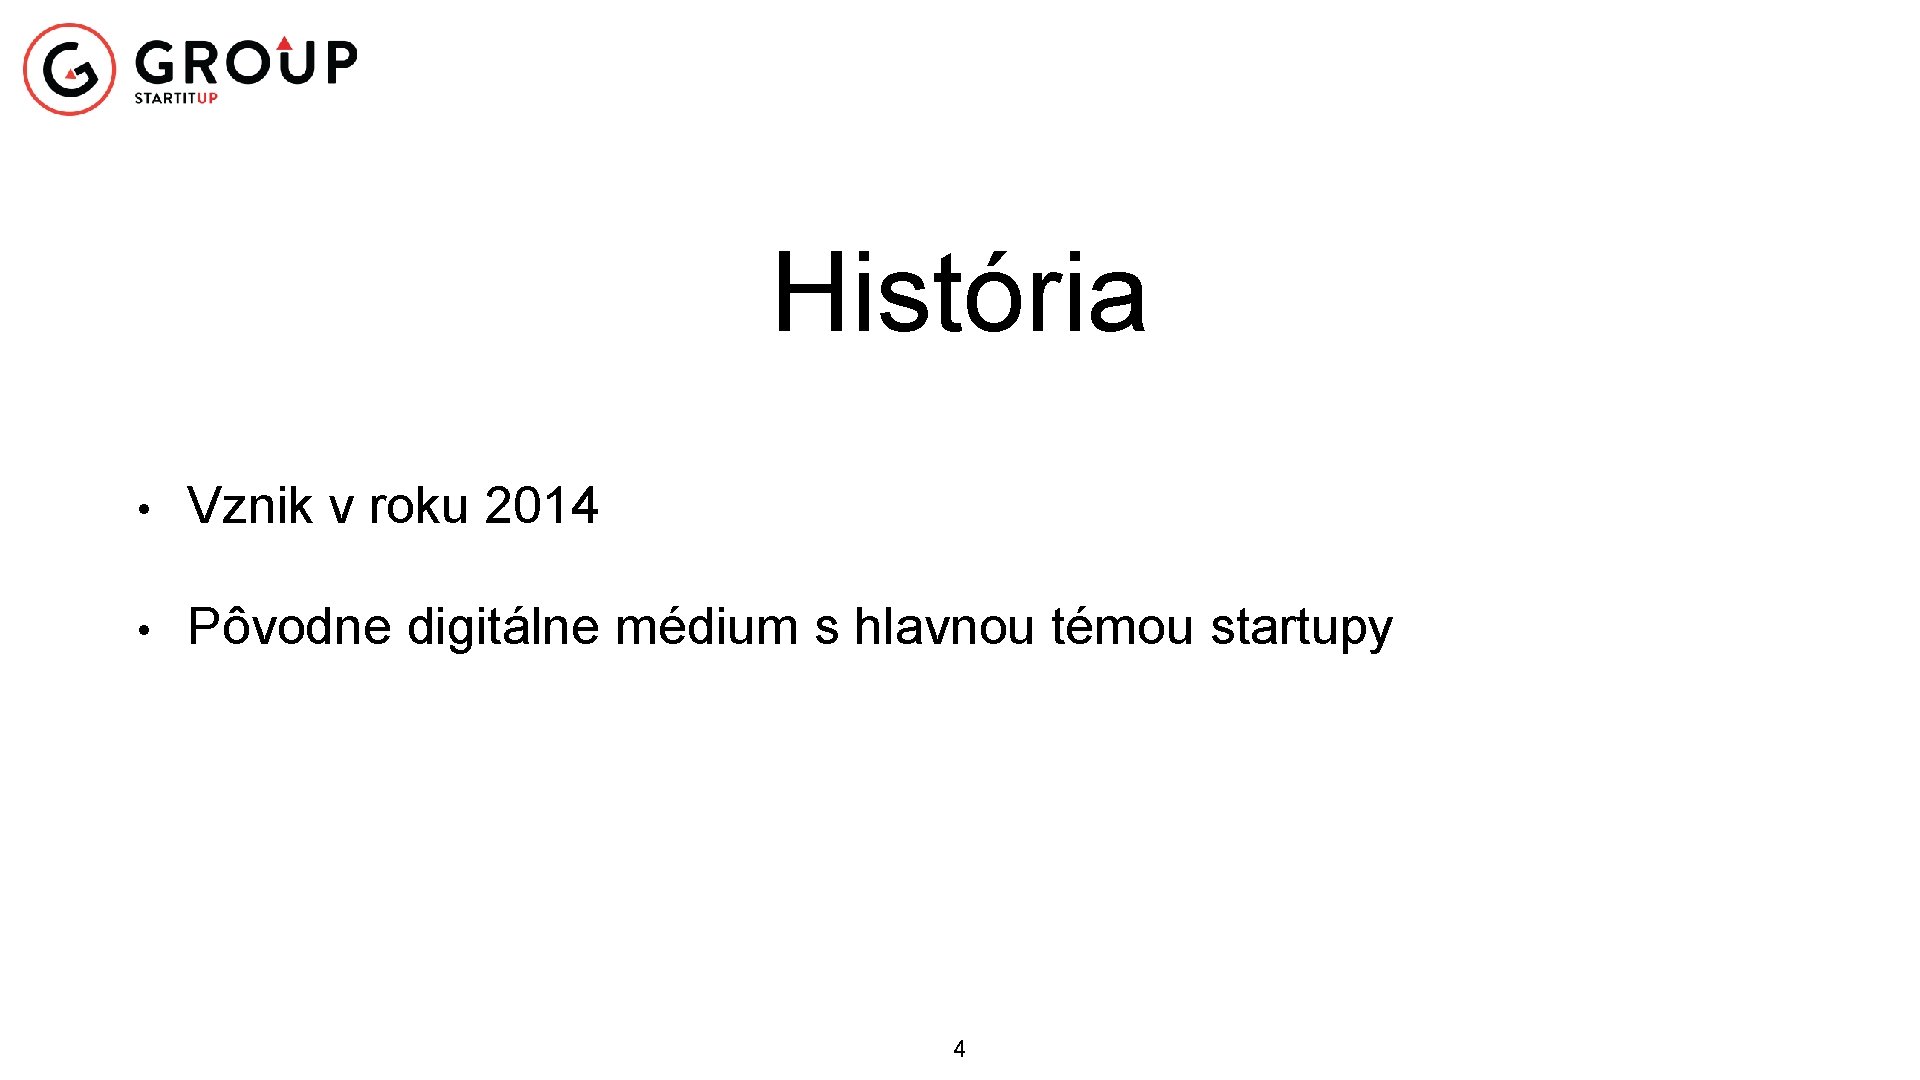 História • Vznik v roku 2014 • Pôvodne digitálne médium s hlavnou témou startupy